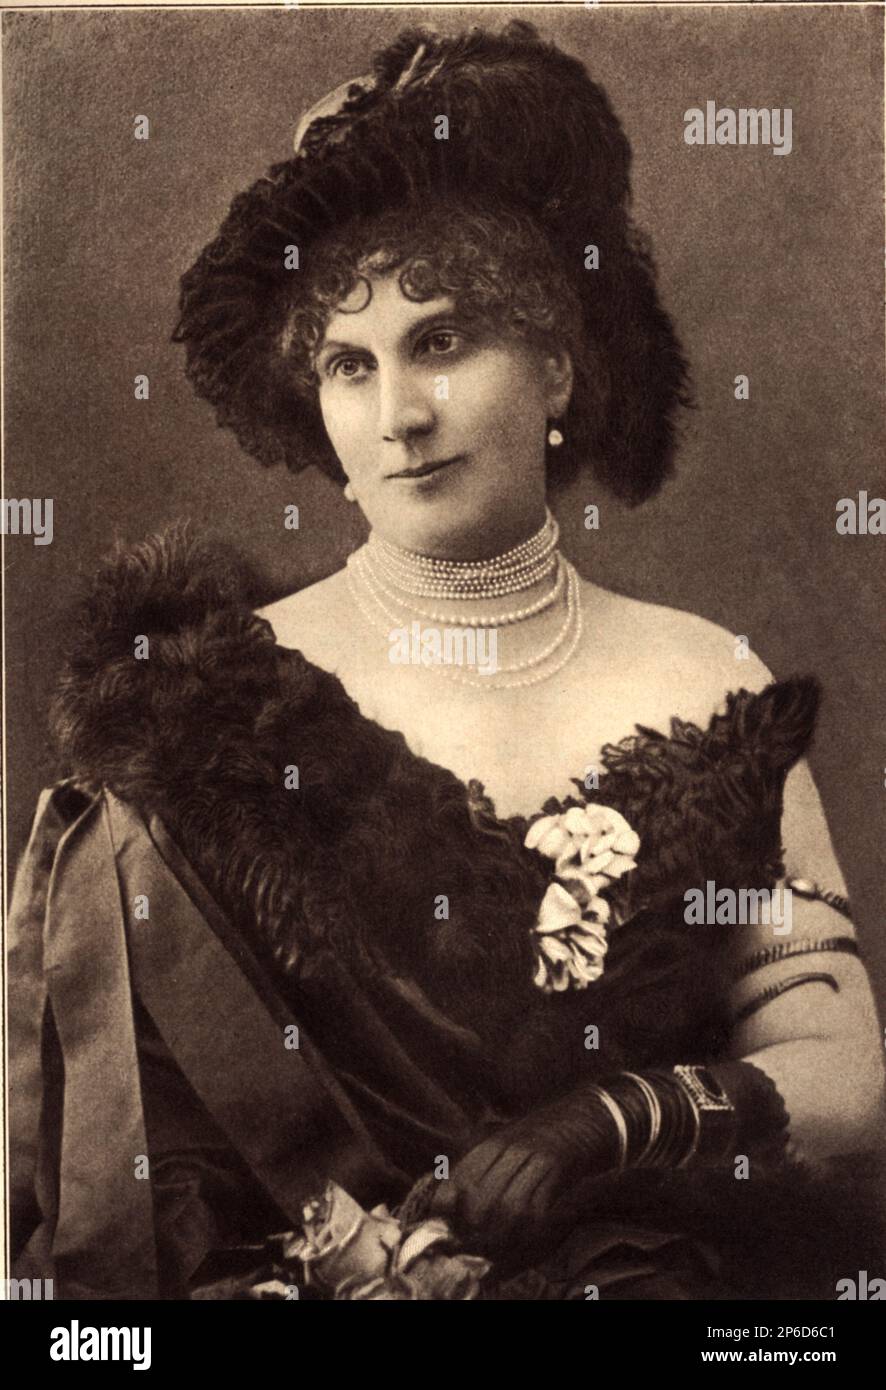 1900 ca , Roma , ITALIA : la contessa COSTANZA GIANOTTI , nata negli Stati Uniti come COSTANZA FRANKLIN KENNY , sposata a Livorno il 15 agosto 1872 con il conte italiano CESARE GIANOTTI ( nata nel 1836 ). Madre di due figlie: le contesse MARIA GIUSEPPINA GIANOTTI ( nata nel 1873 ) sposarono nel 1902 con il Conte Alfonso BALBO BERTONE dei conti di SAMBUY ( dettato BALBIS BERTONE , nato nel 1868 ) e LA MARCELLA GIANOTTI ( nata nel 1875 ). - Constanza - foto storiche - foto storica - ritratto - ritratto - Nobiltà italiana - nobiltà - nobili italiani - nobile - BELLE EPOQUE - ITALIA - cappello Foto Stock